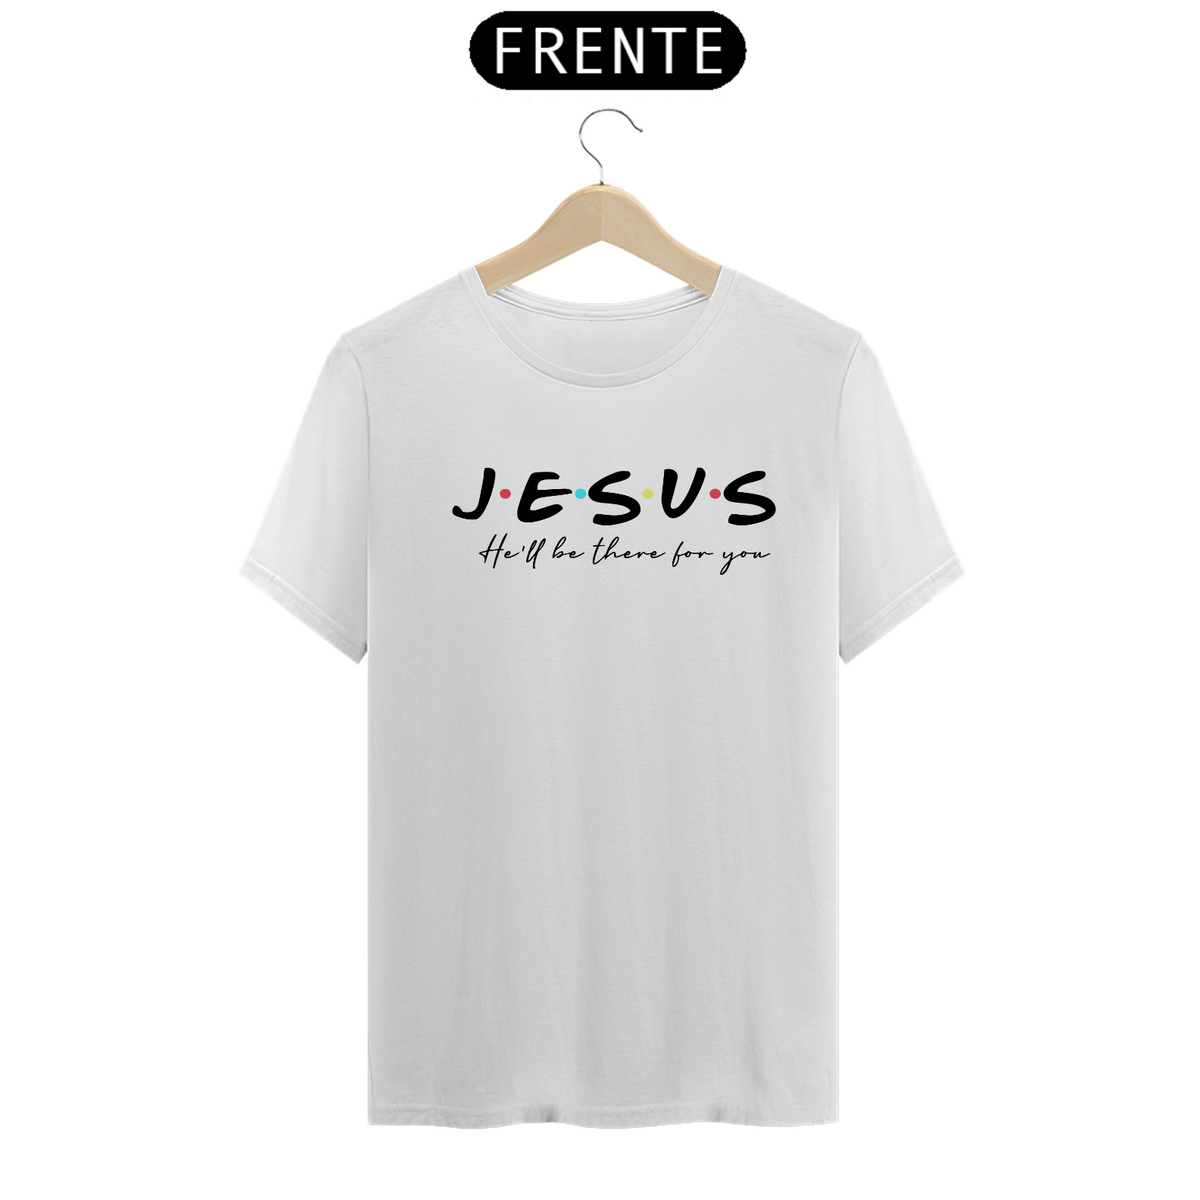 Nome do produto: Jesus friends